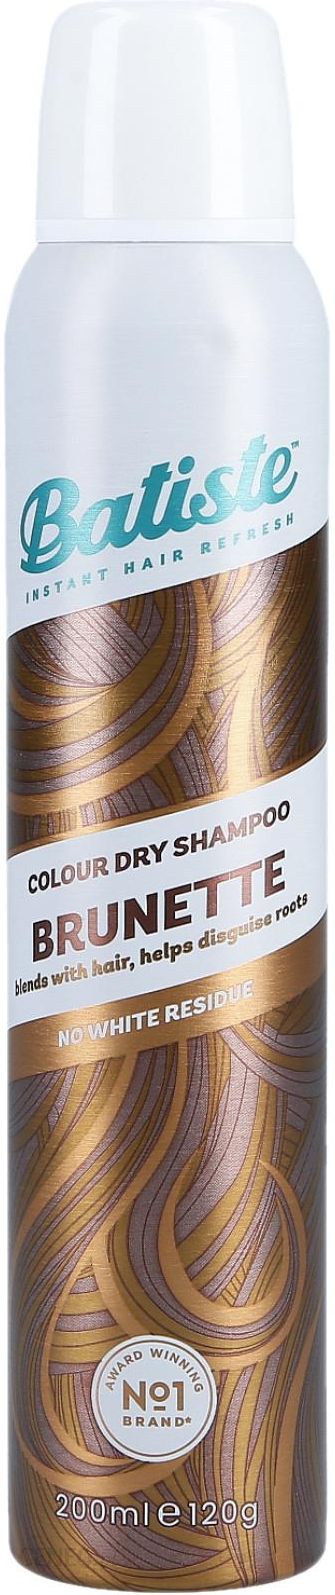 suchy szampon brunette opinie